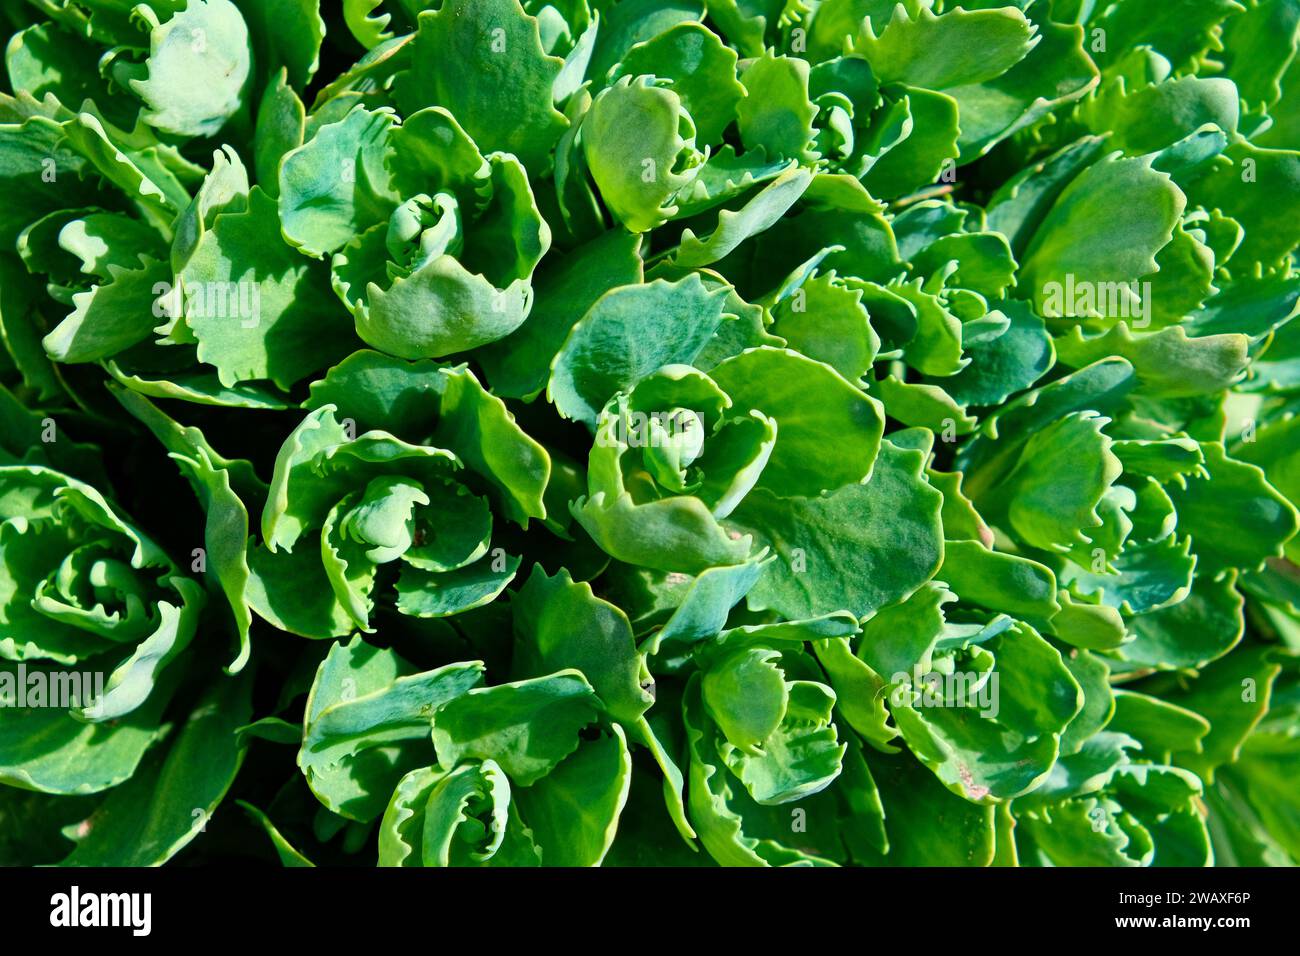 La imagen muestra un primer plano de plantas suculentas verdes vibrantes con hojas gruesas y carnosas bajo luz brillante. Brotes jóvenes de orpino (Sedum telephium). B Foto de stock